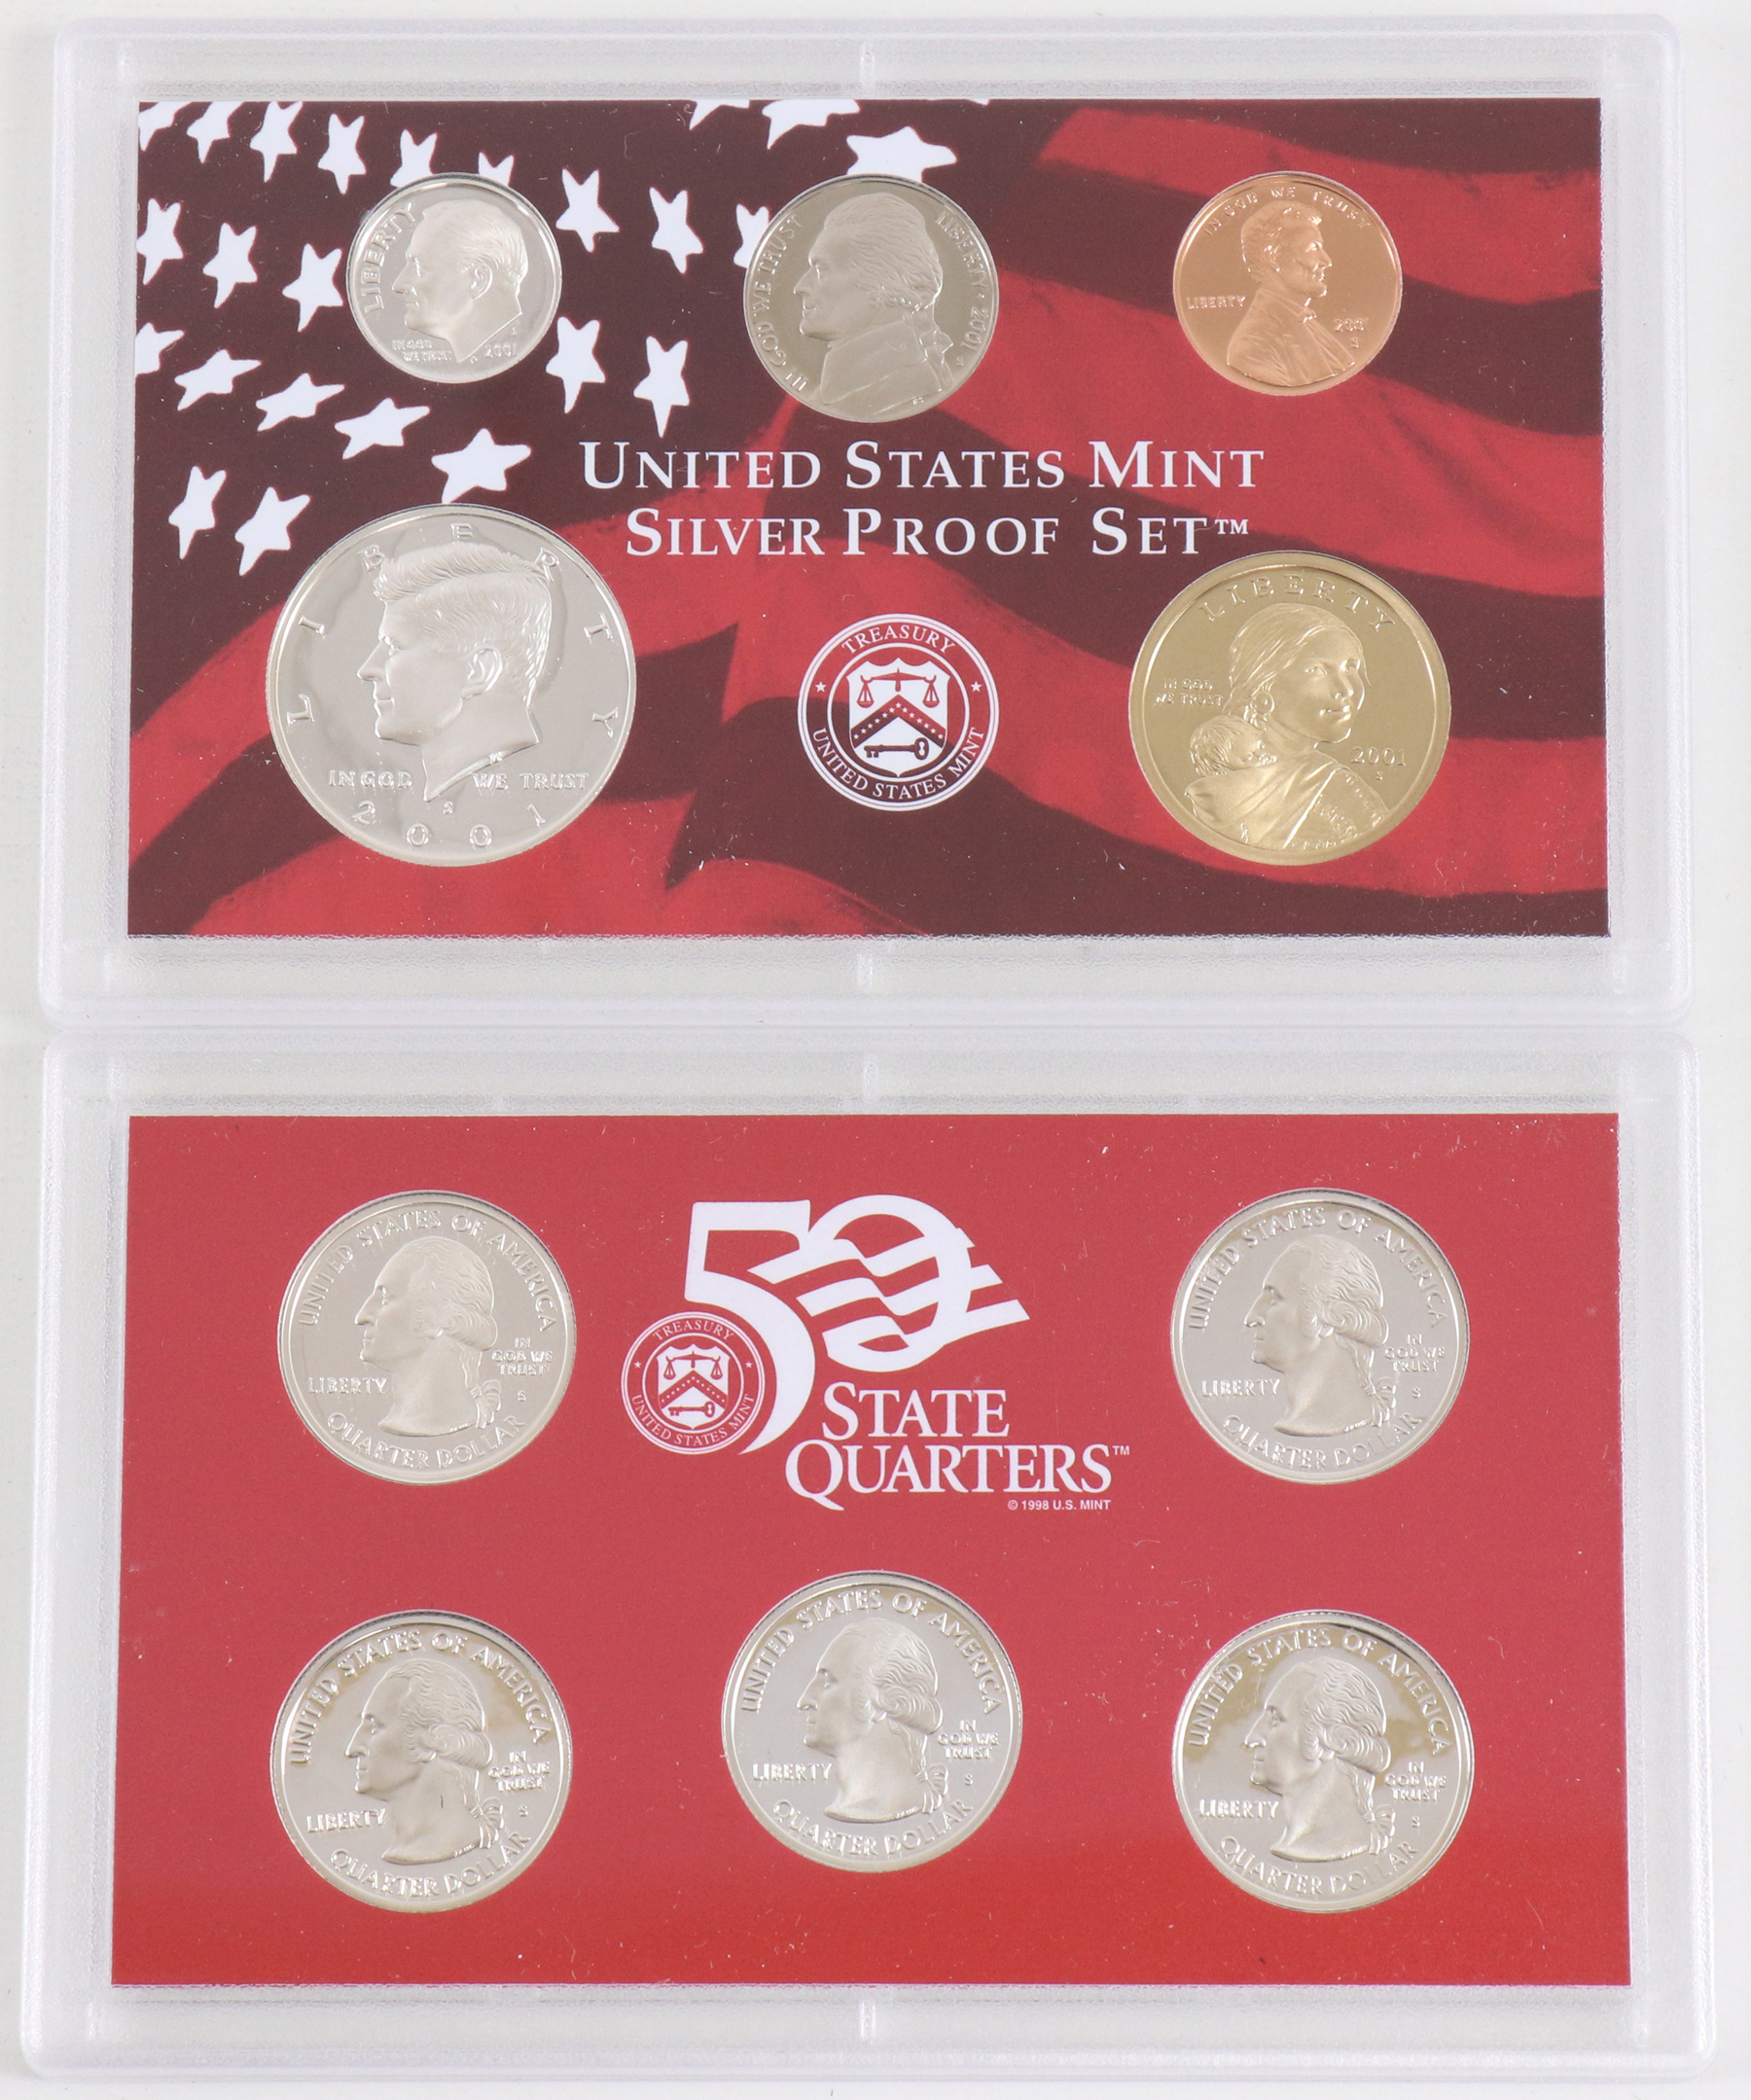 2001 U.S. Mint Silver Proof Set in Mint Box - Hyatt Coins